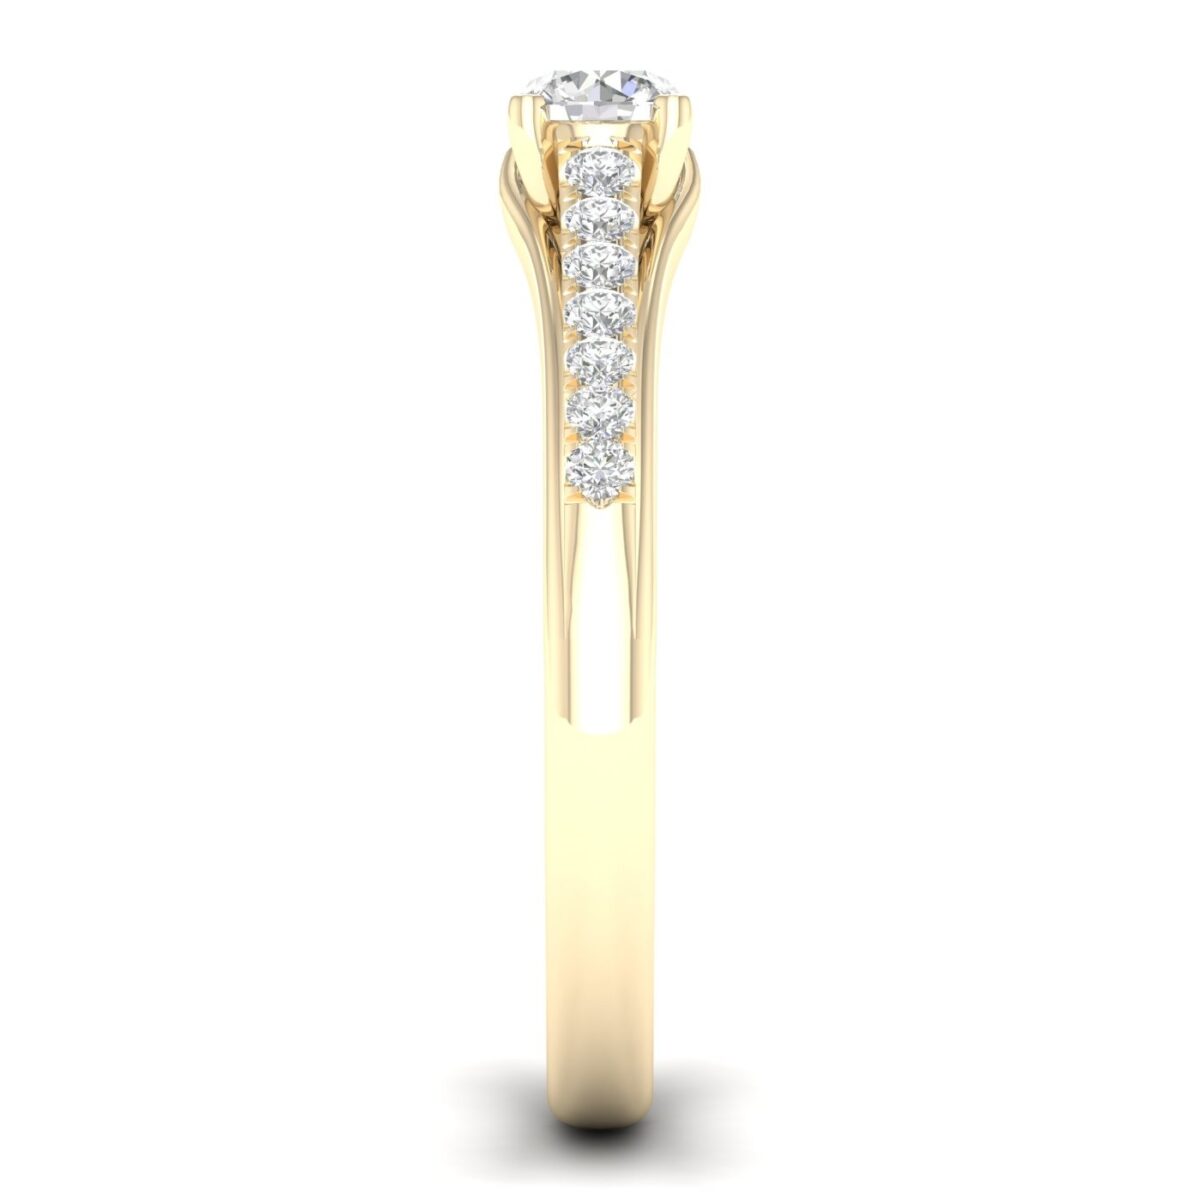 Kullast sõrmus teemantidega 0,50 ct. Kood: 69hc